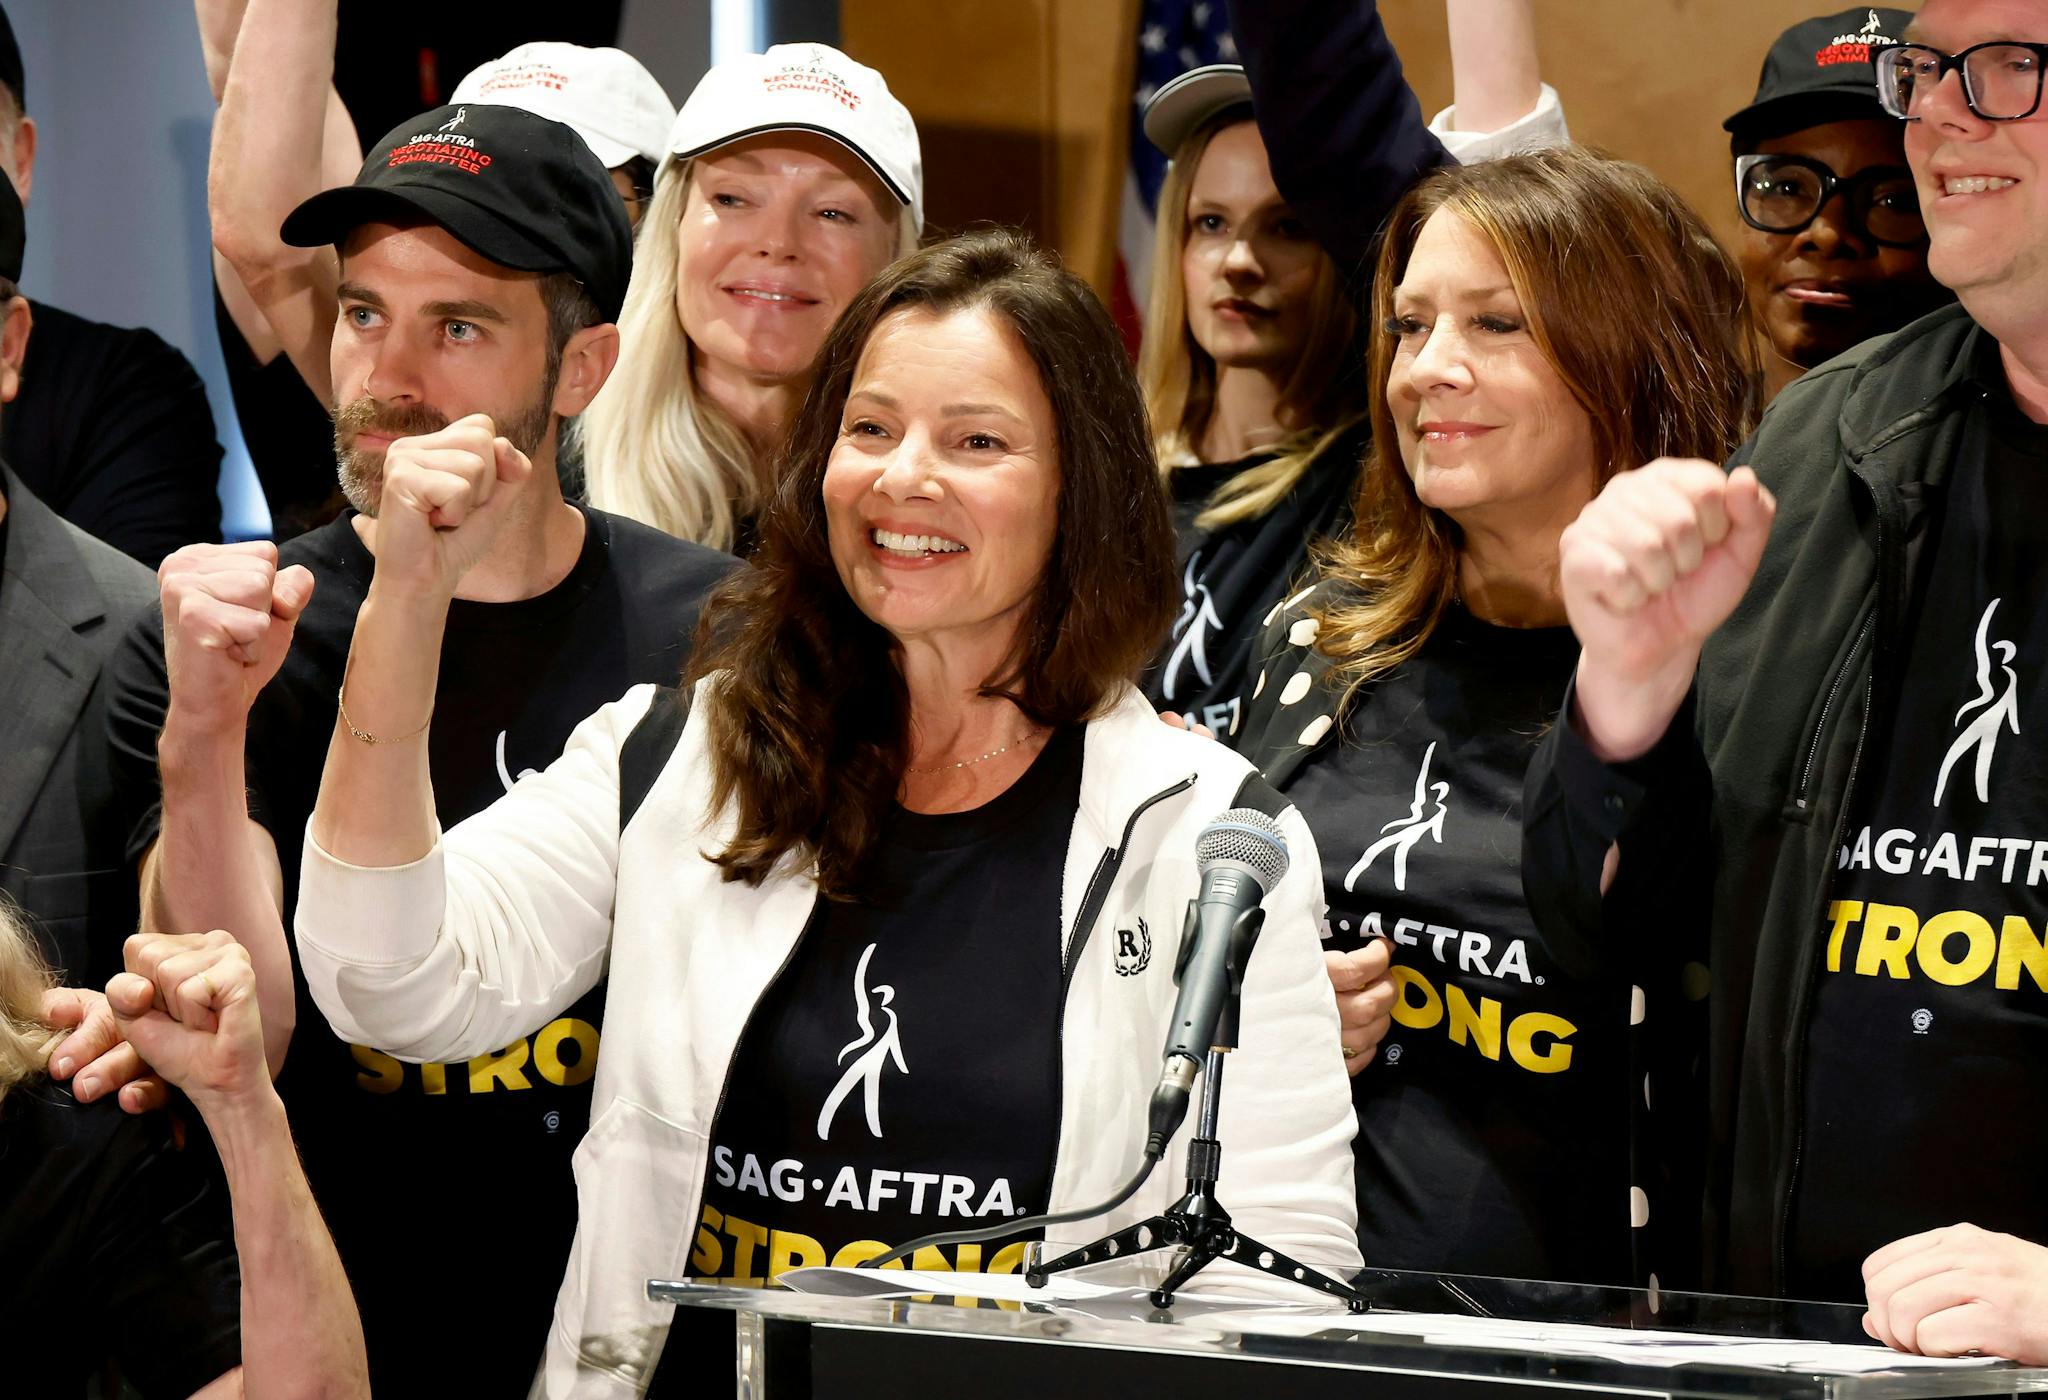 La presidenta del sindicato SAG-AFTRA, la actriz Fran Drescher, sonríe tras anunciar la huelga de actores y actrices de Hollywood